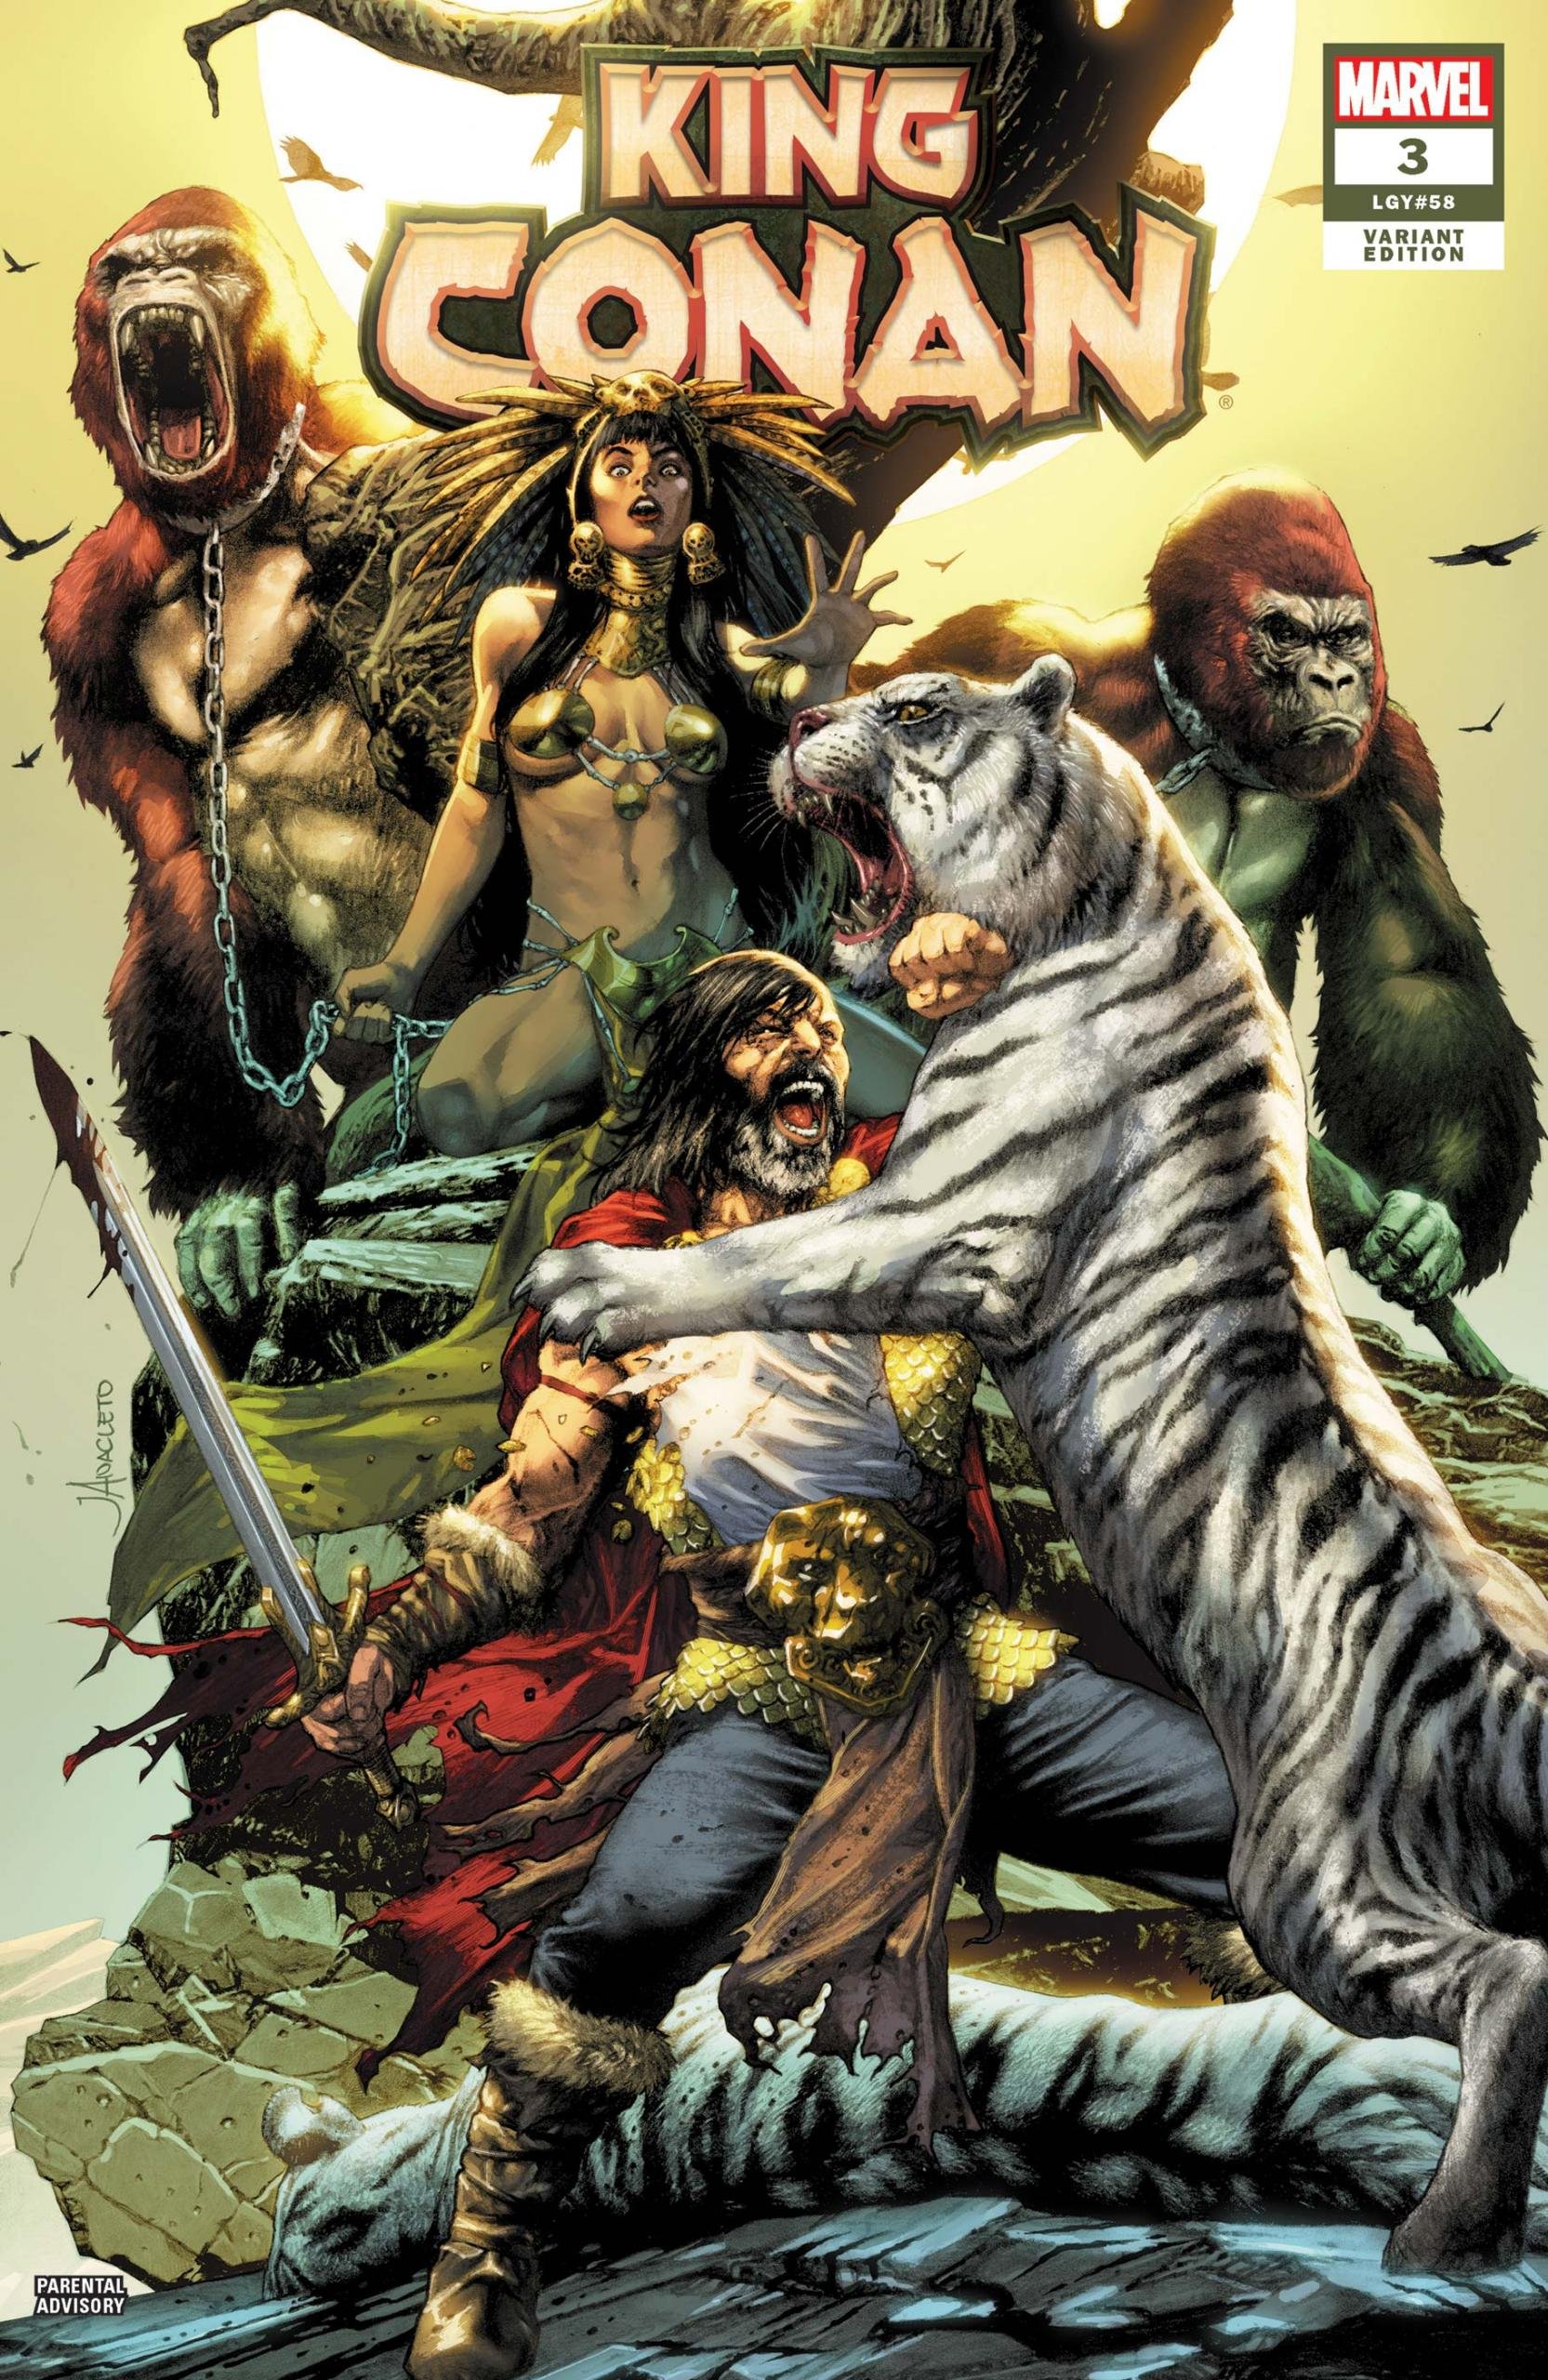 Variant cover di King Conan 3 di Jay Anacleto, con il personaggio ispirato a Pocahontas